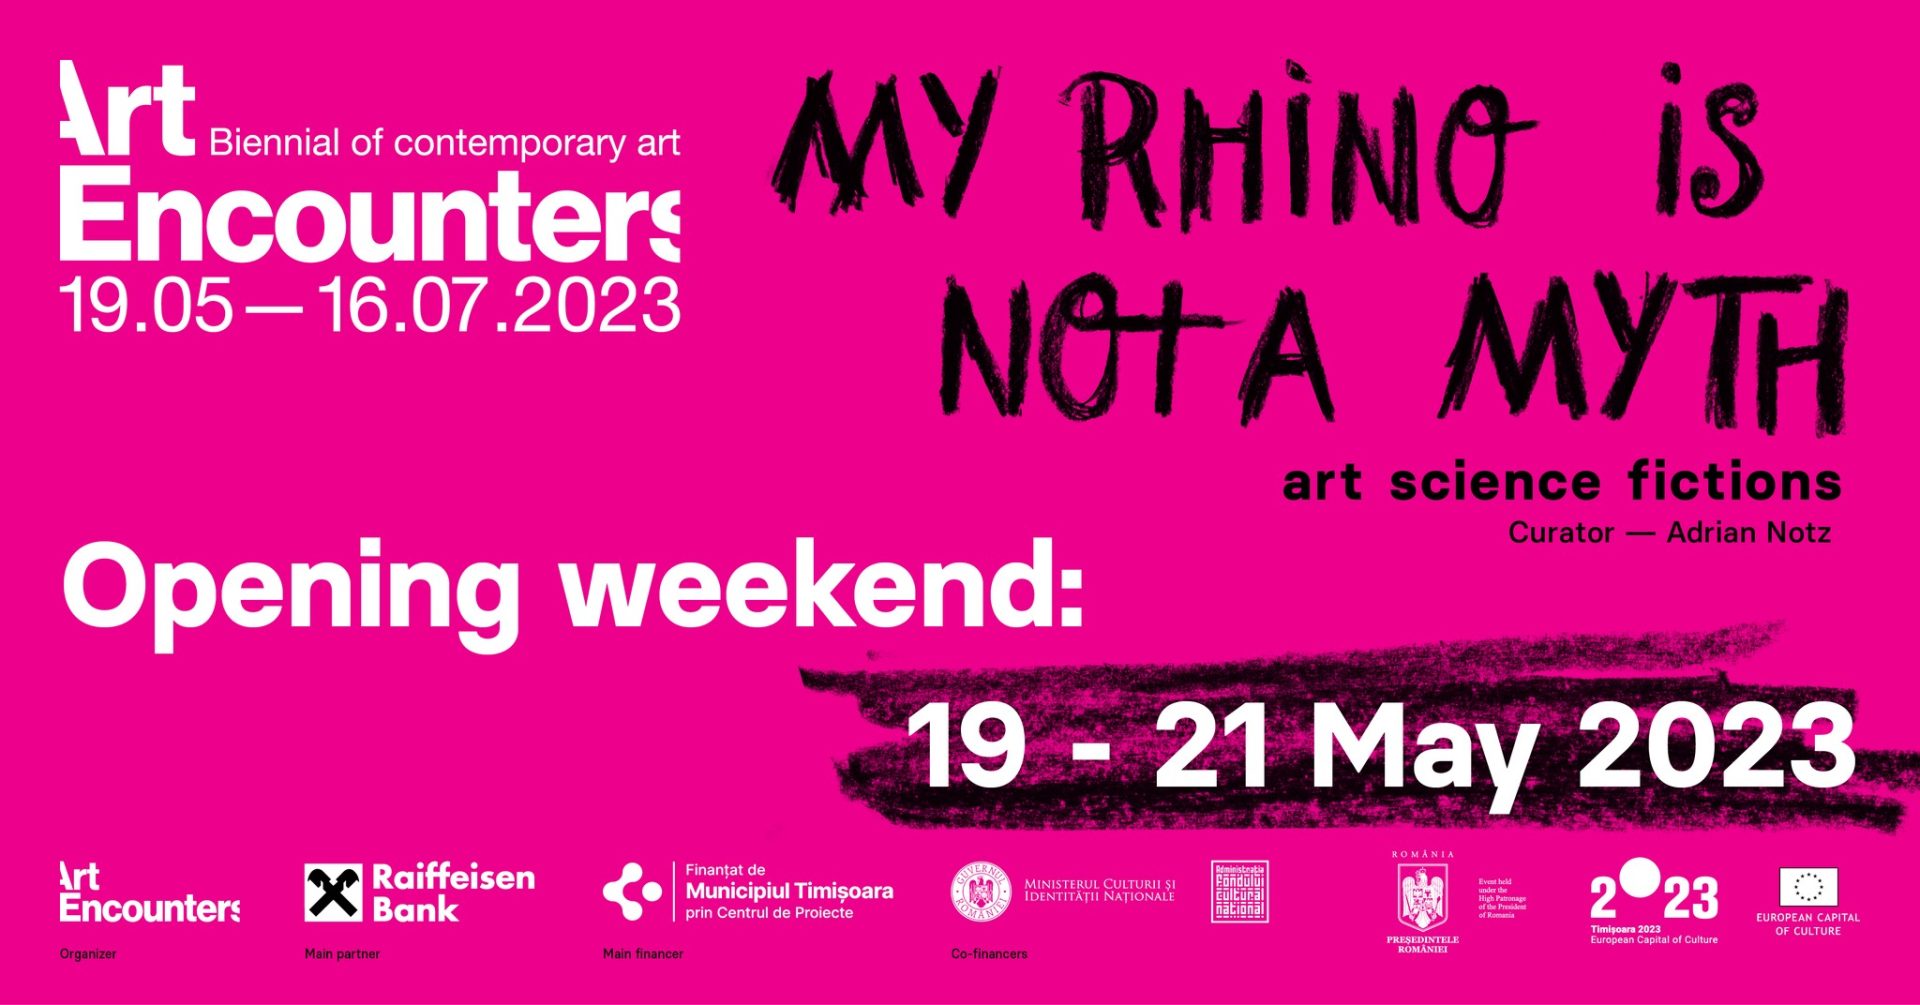 Art Encounters Biennial 2023: Opening Weekend, 19 – 21 May